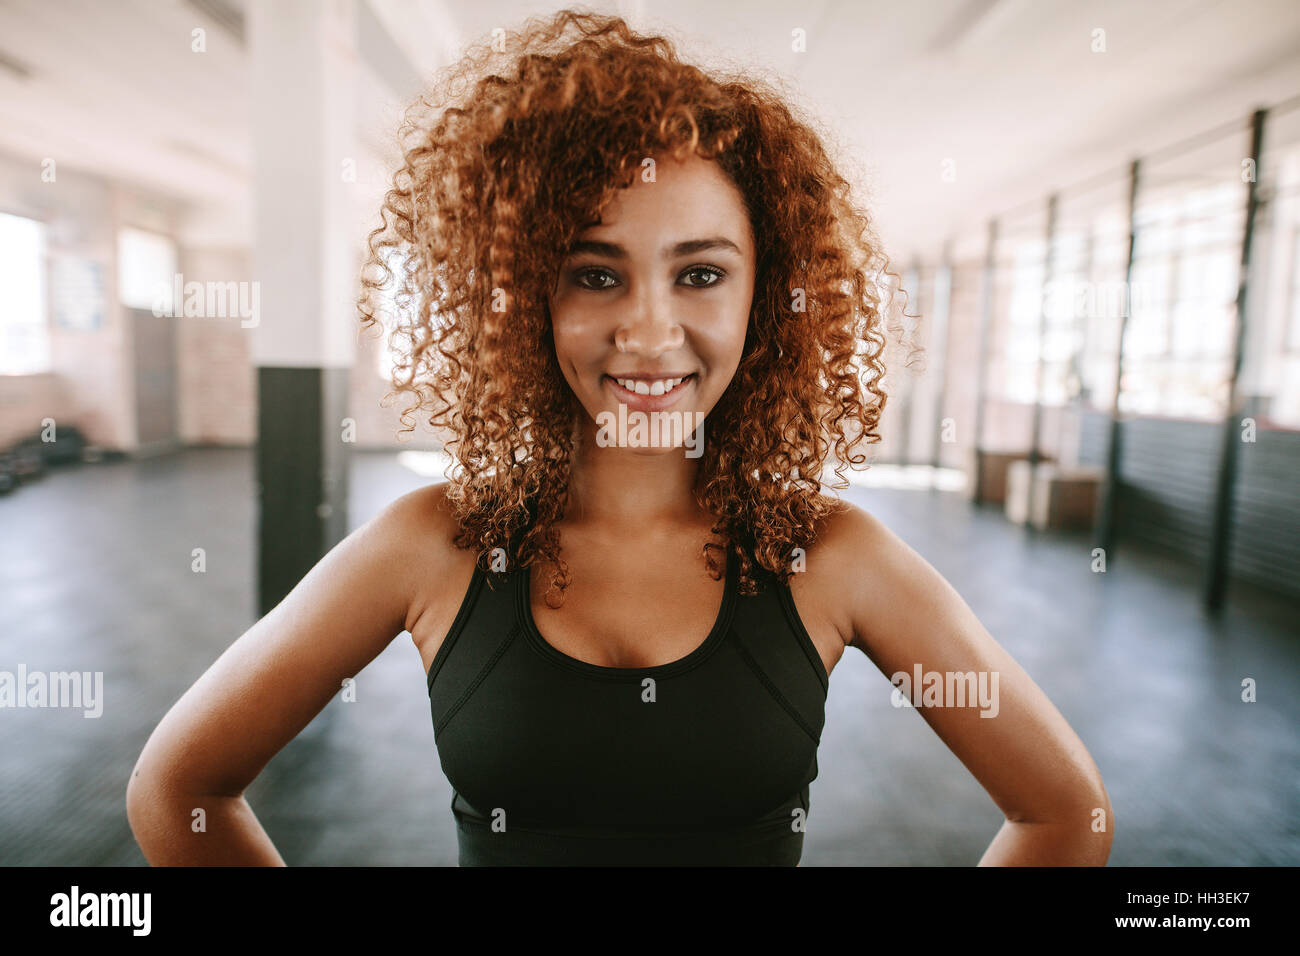 Portrait de jeune femme africaine avec des cheveux bouclés smiling in health club. Heureux et belle femme de remise en forme à la salle de sport. Banque D'Images